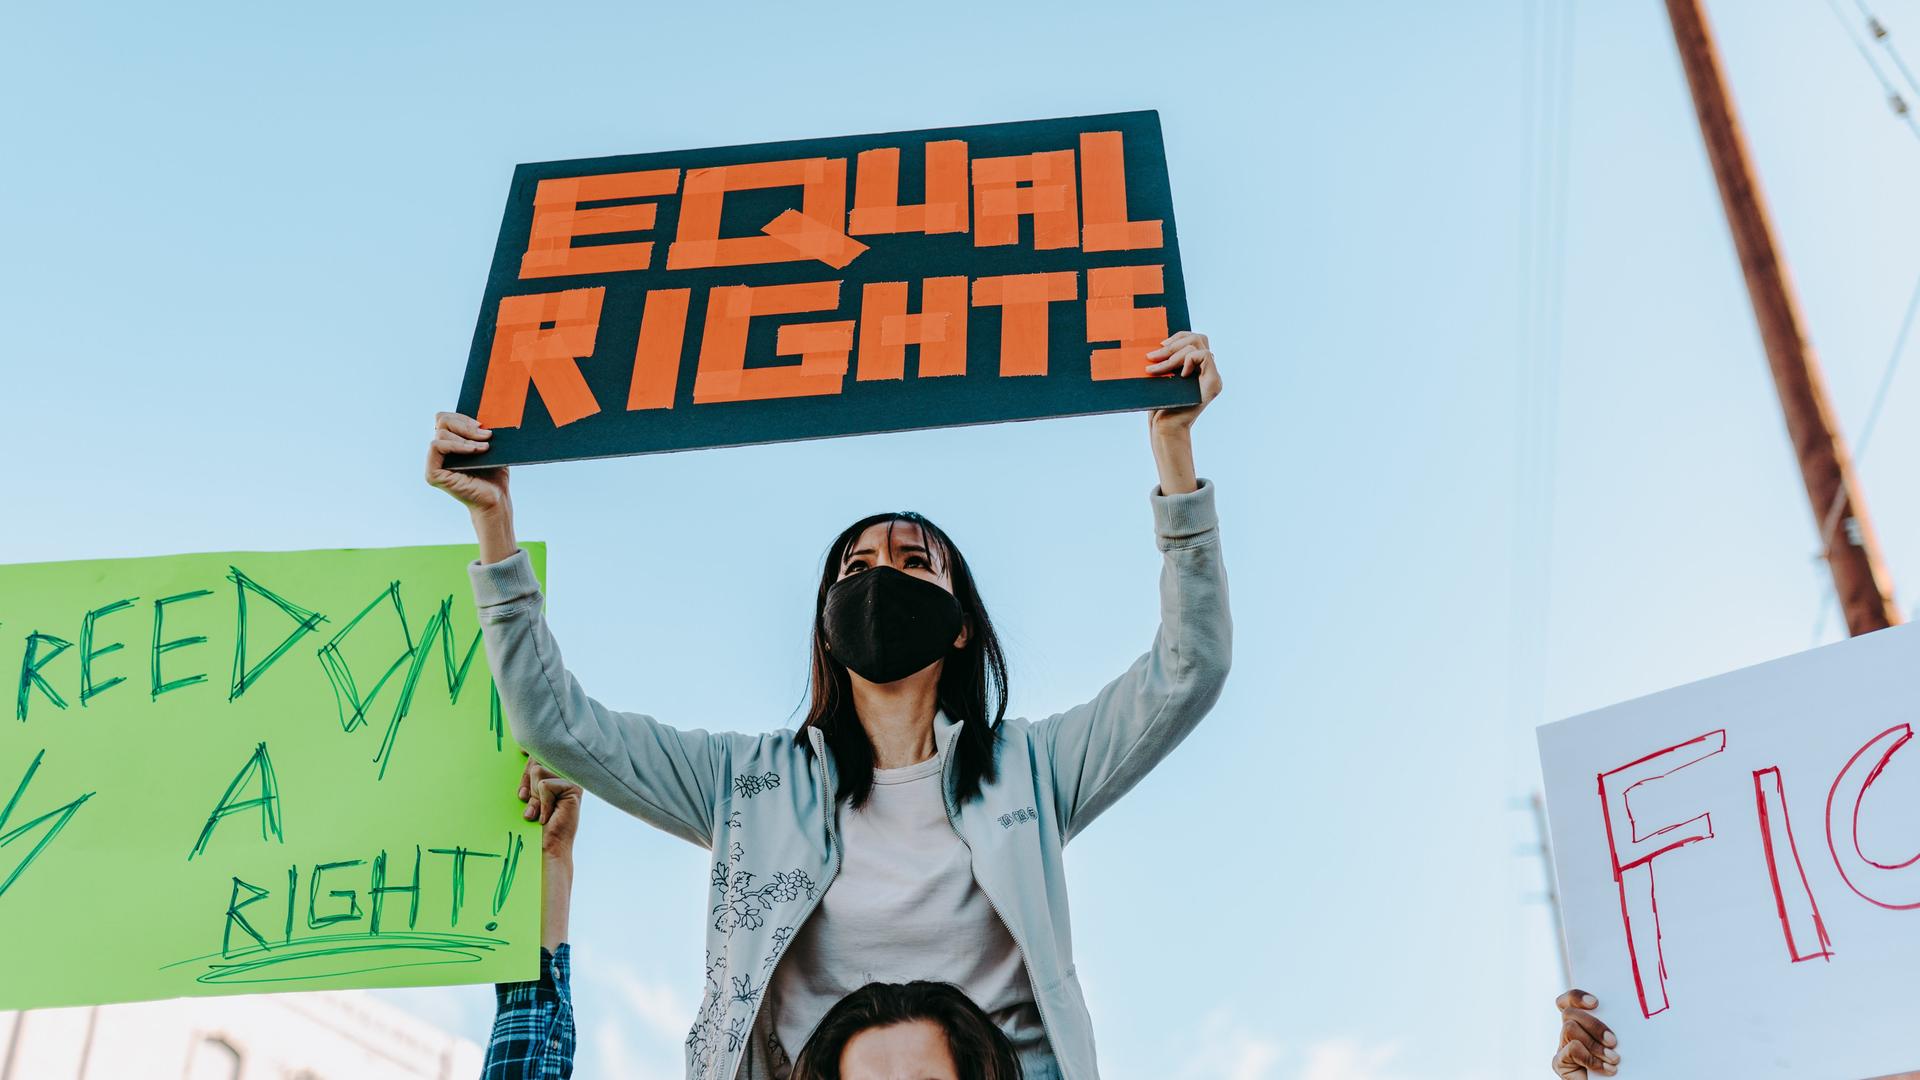 Eine Frau hält ein Schild hoch auf dem "Equal Rights" steht.